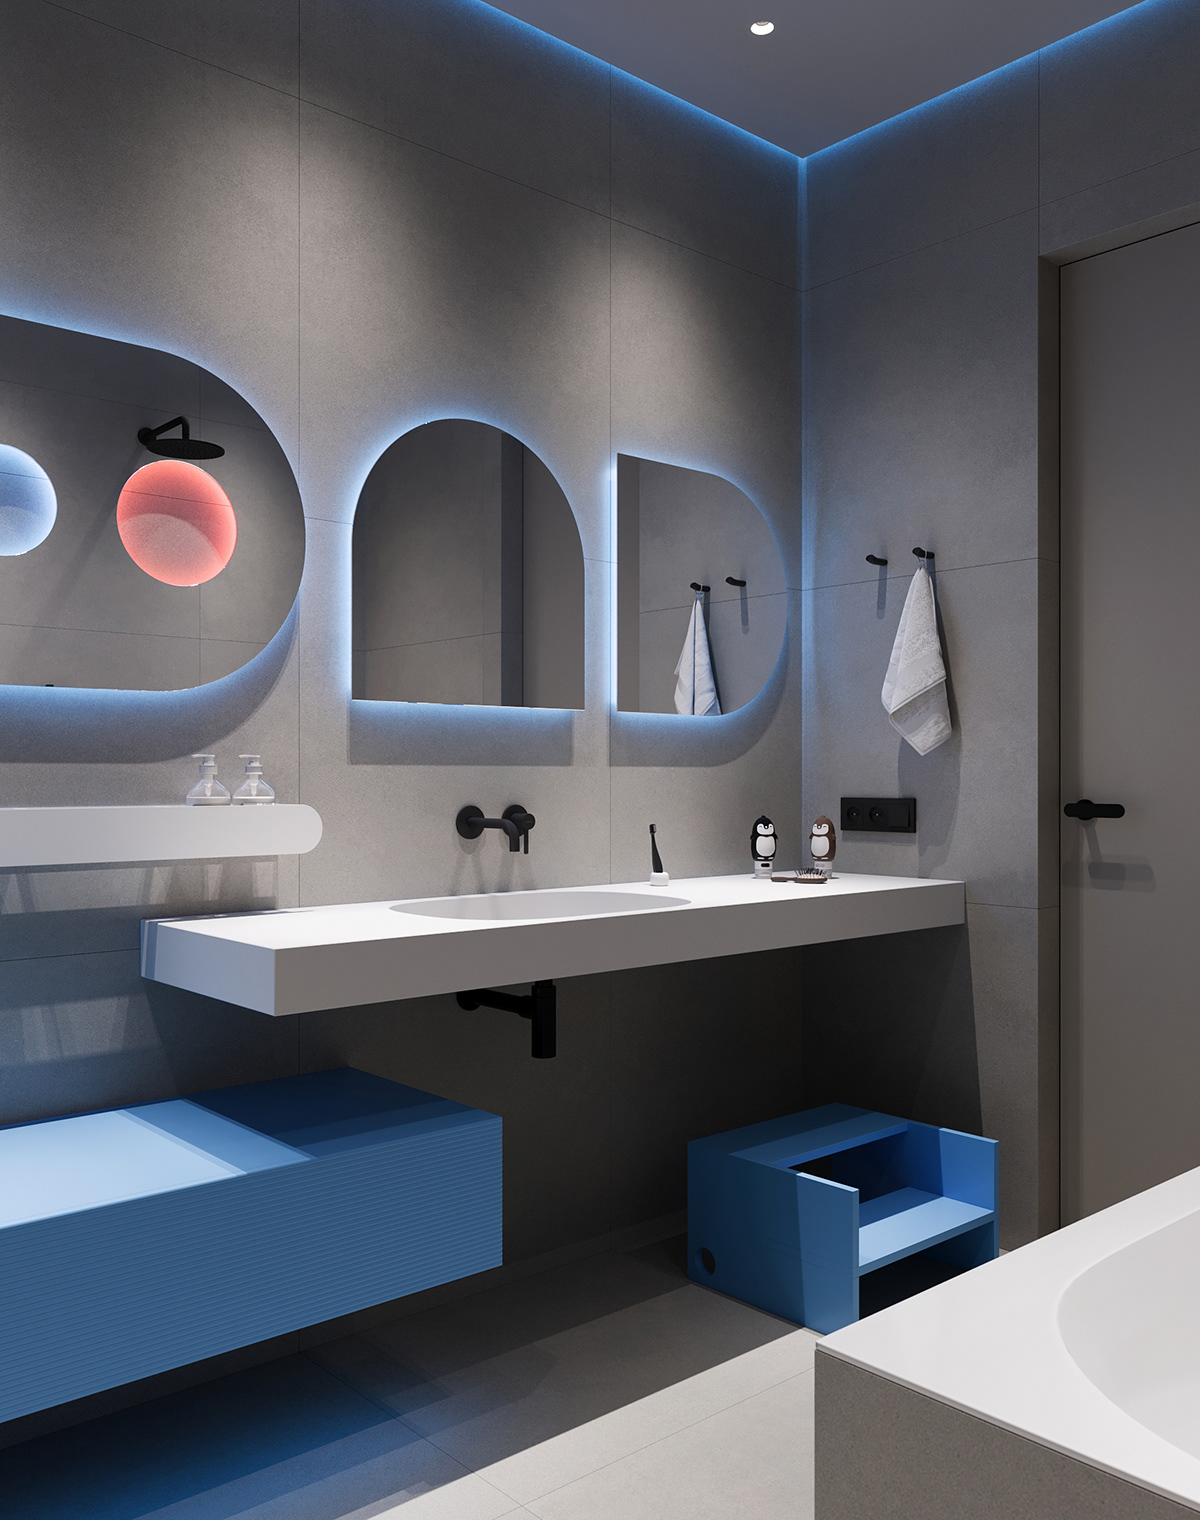 3ds max architecture archviz CGI CoronaRender  houseinterior interior design  modern Render visualization